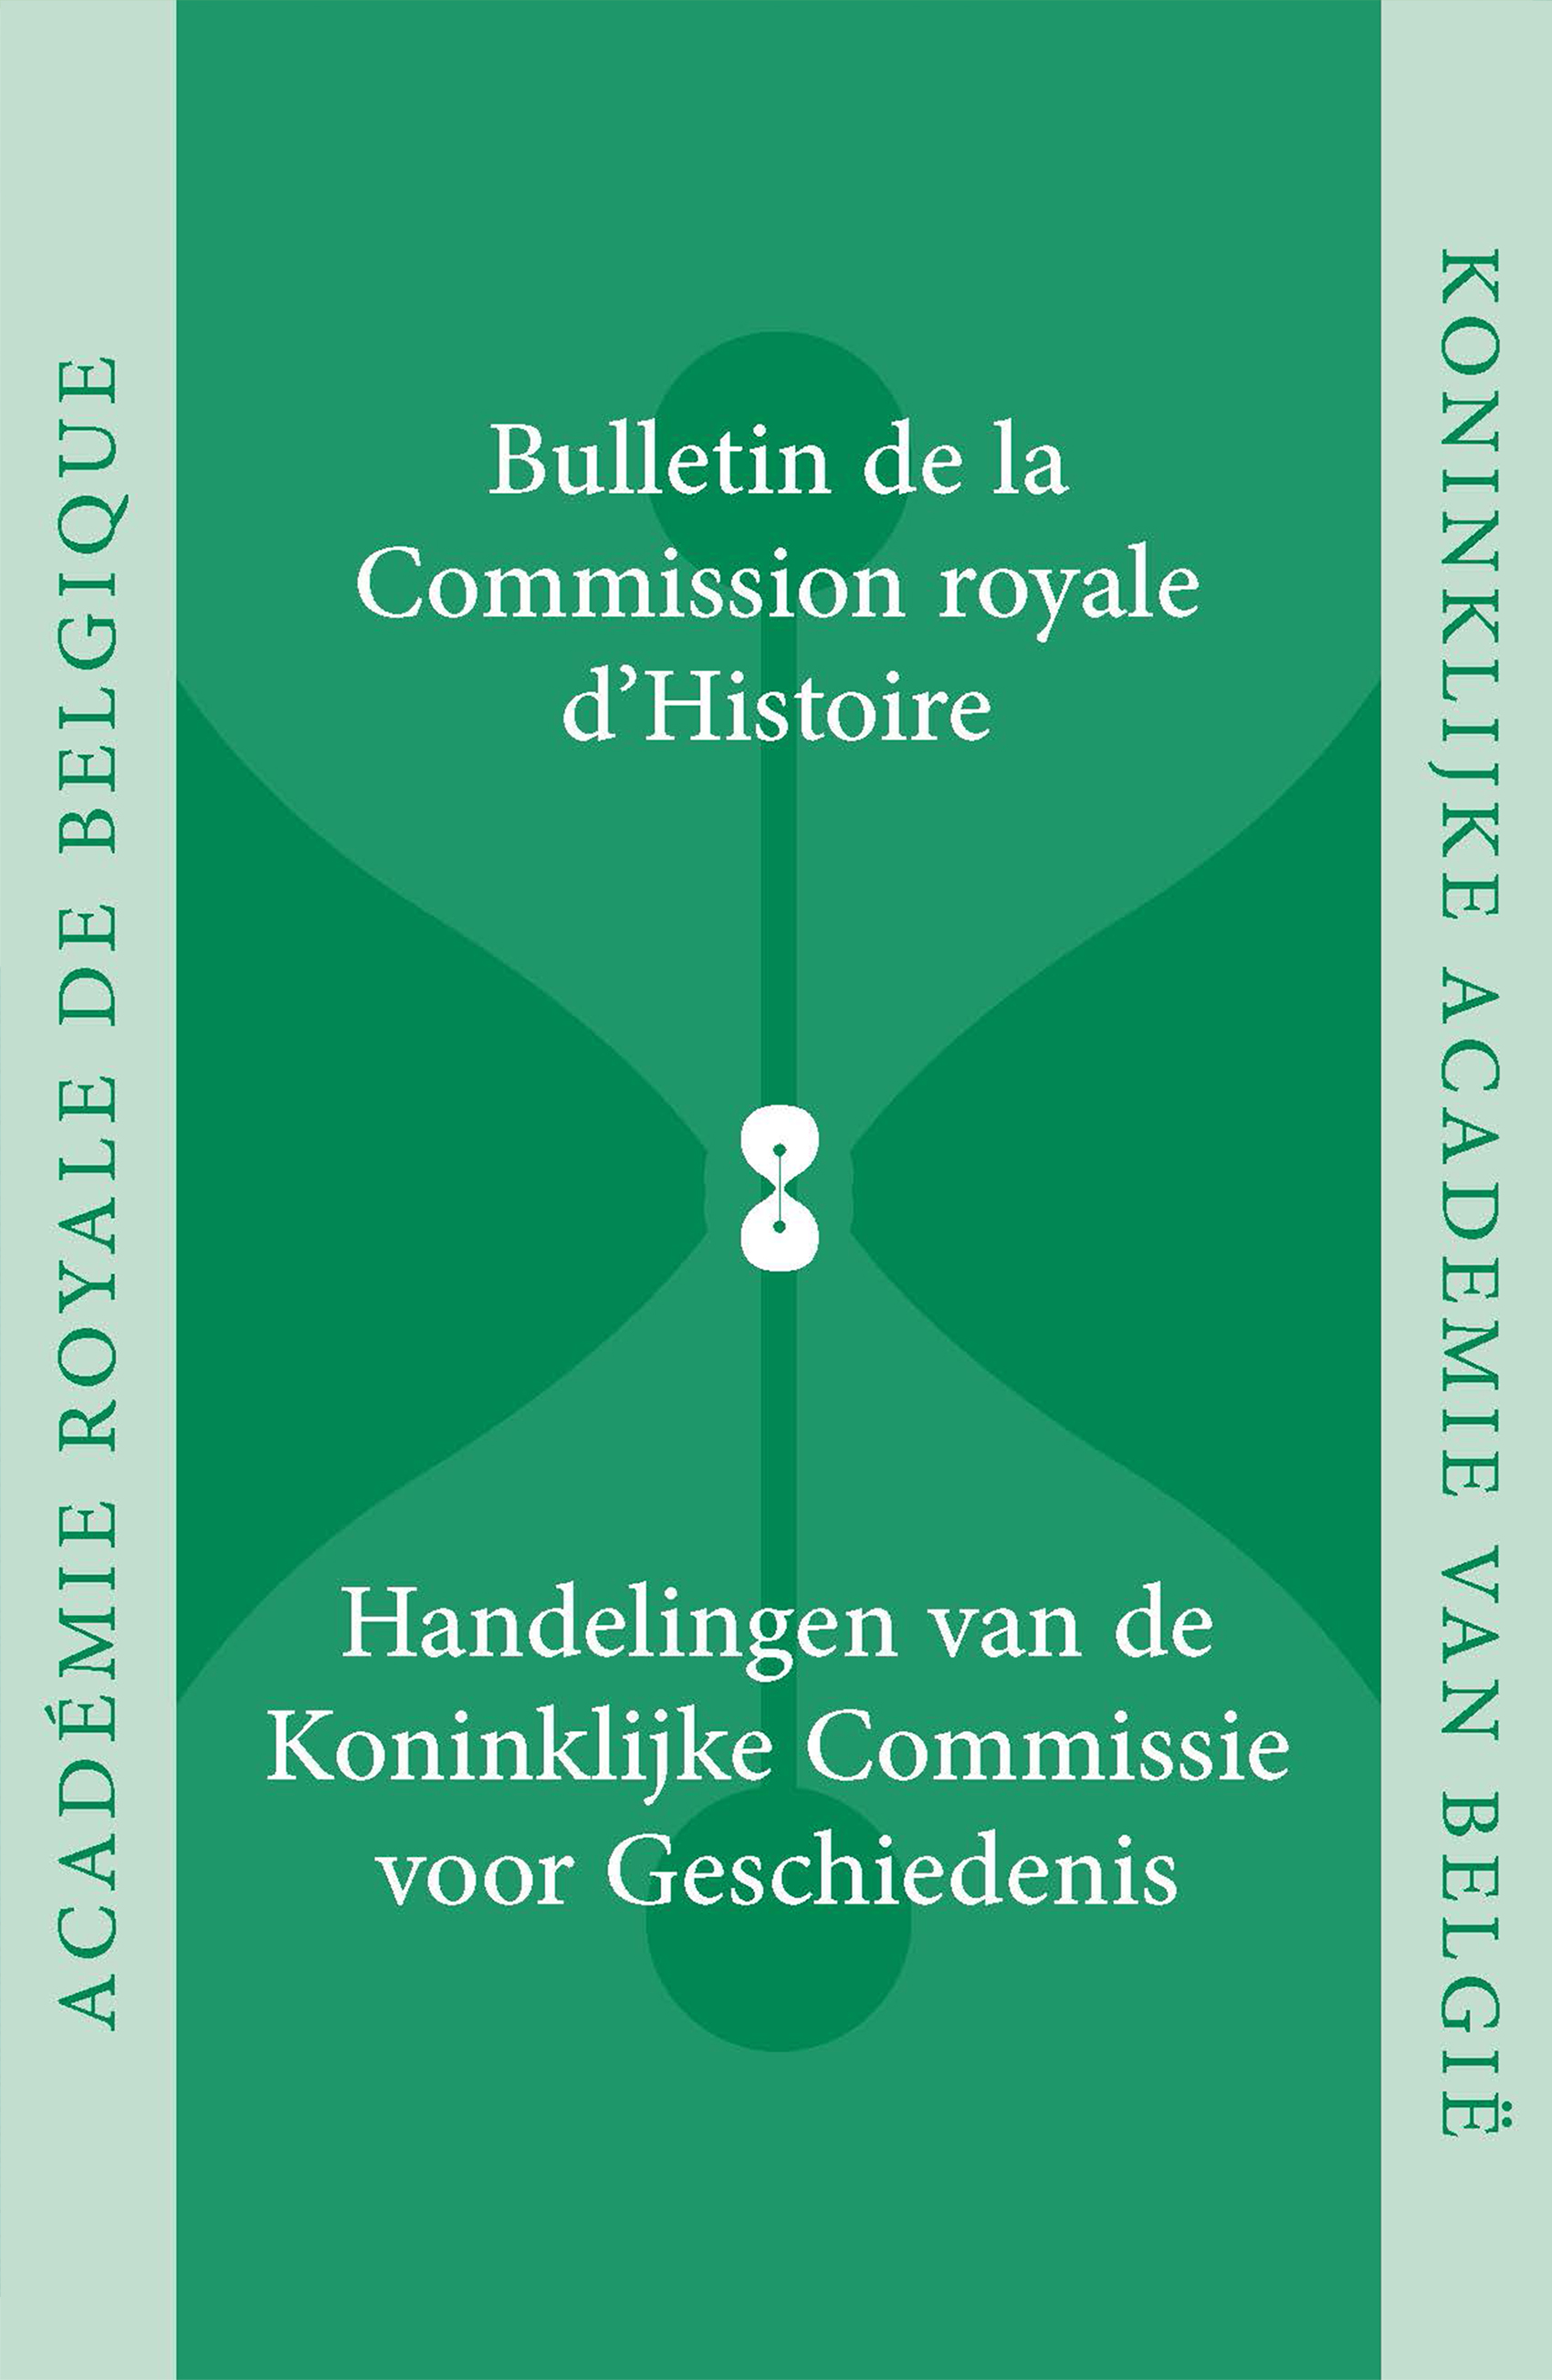 HANDELINGEN VAN DE KONINKLIJKE COMMISSIE VOOR GESCHIEDENIS/BULLETIN, VOL. 185, 2019 (kcg)